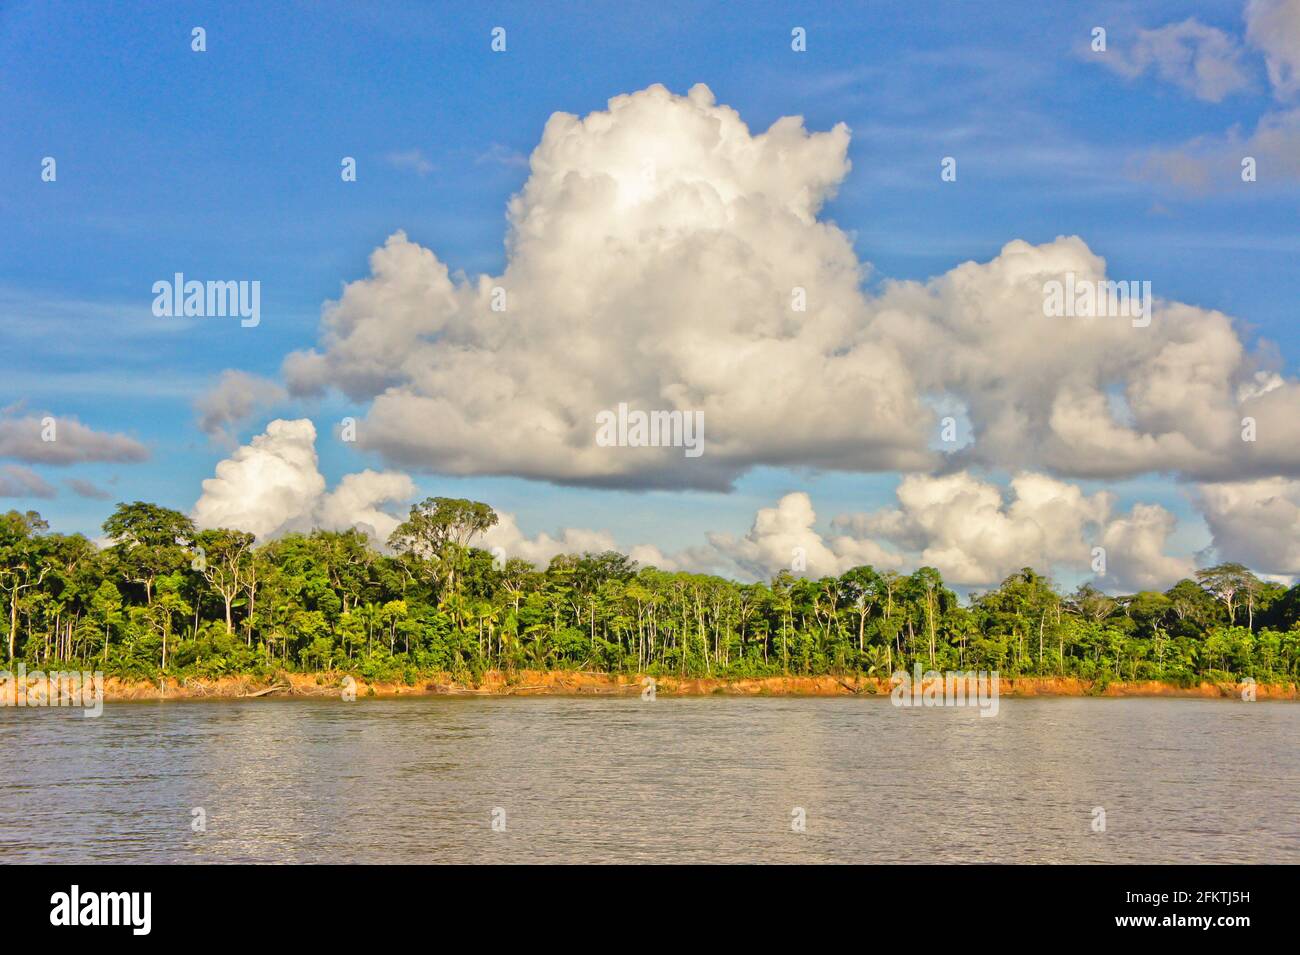 Amazon Basin, Peru, South America Stock Photo - Alamy